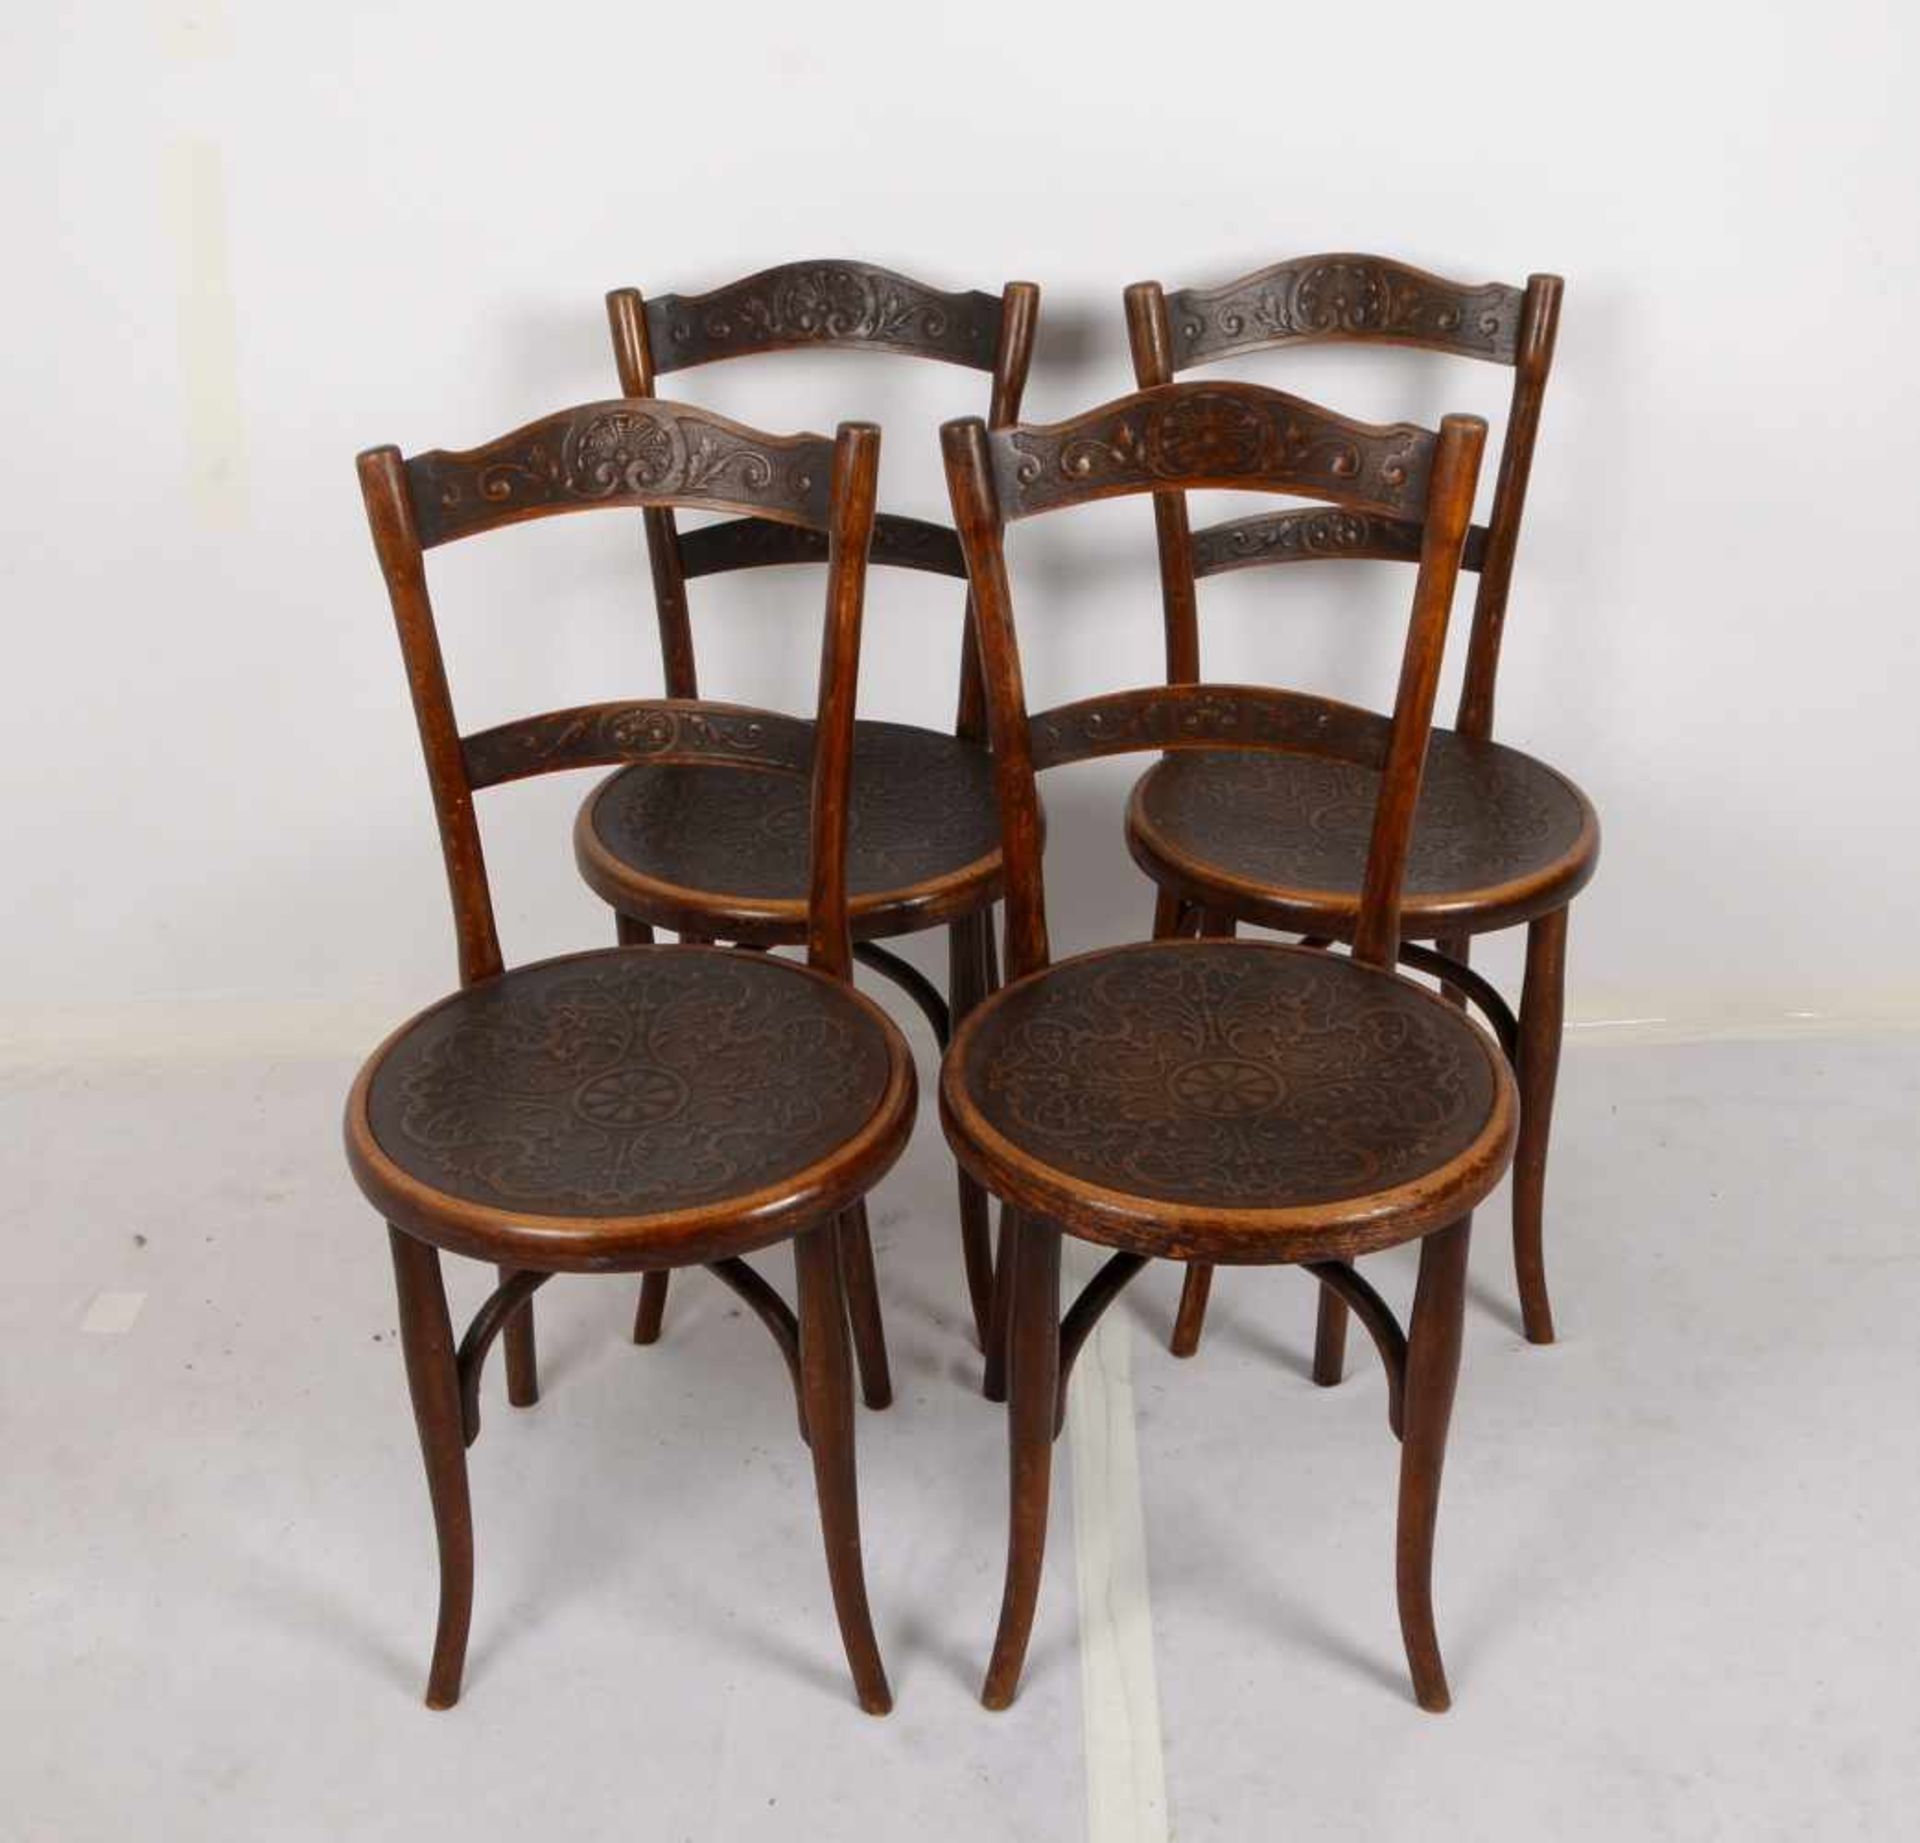 Thonet, Satz Stühle, Rückenlehne und Sitzfläche geprägt, 4 Stück/davon 2x mit original Klebeetikett - Bild 2 aus 2